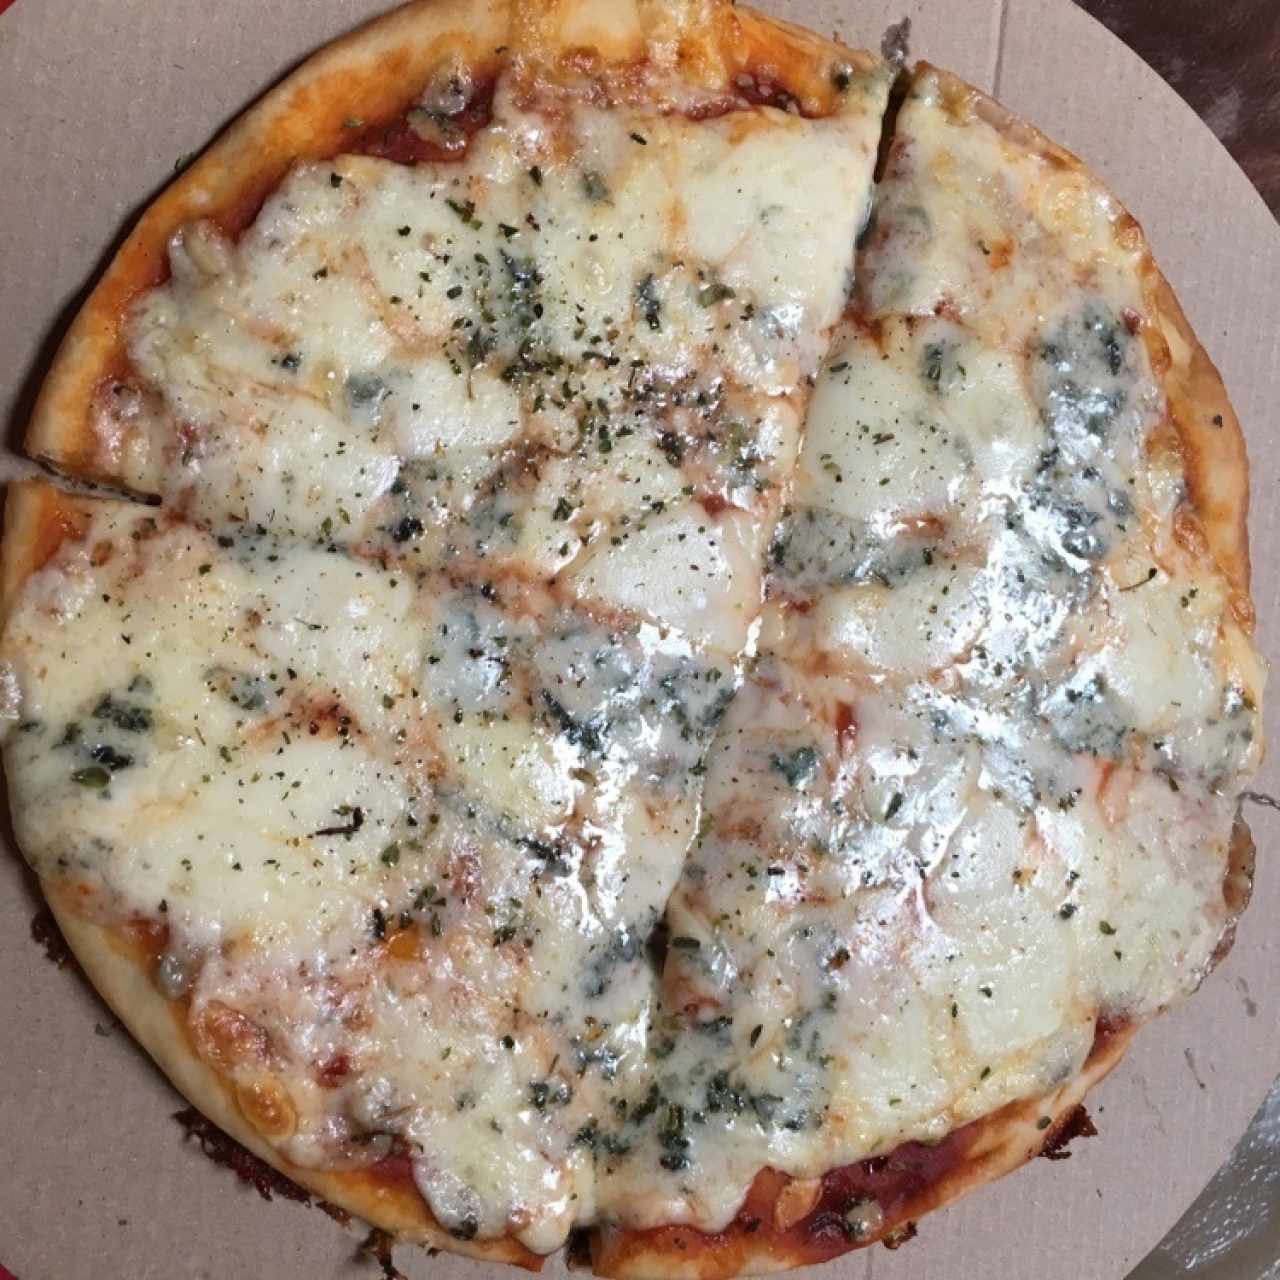 pizza 3 quesos 